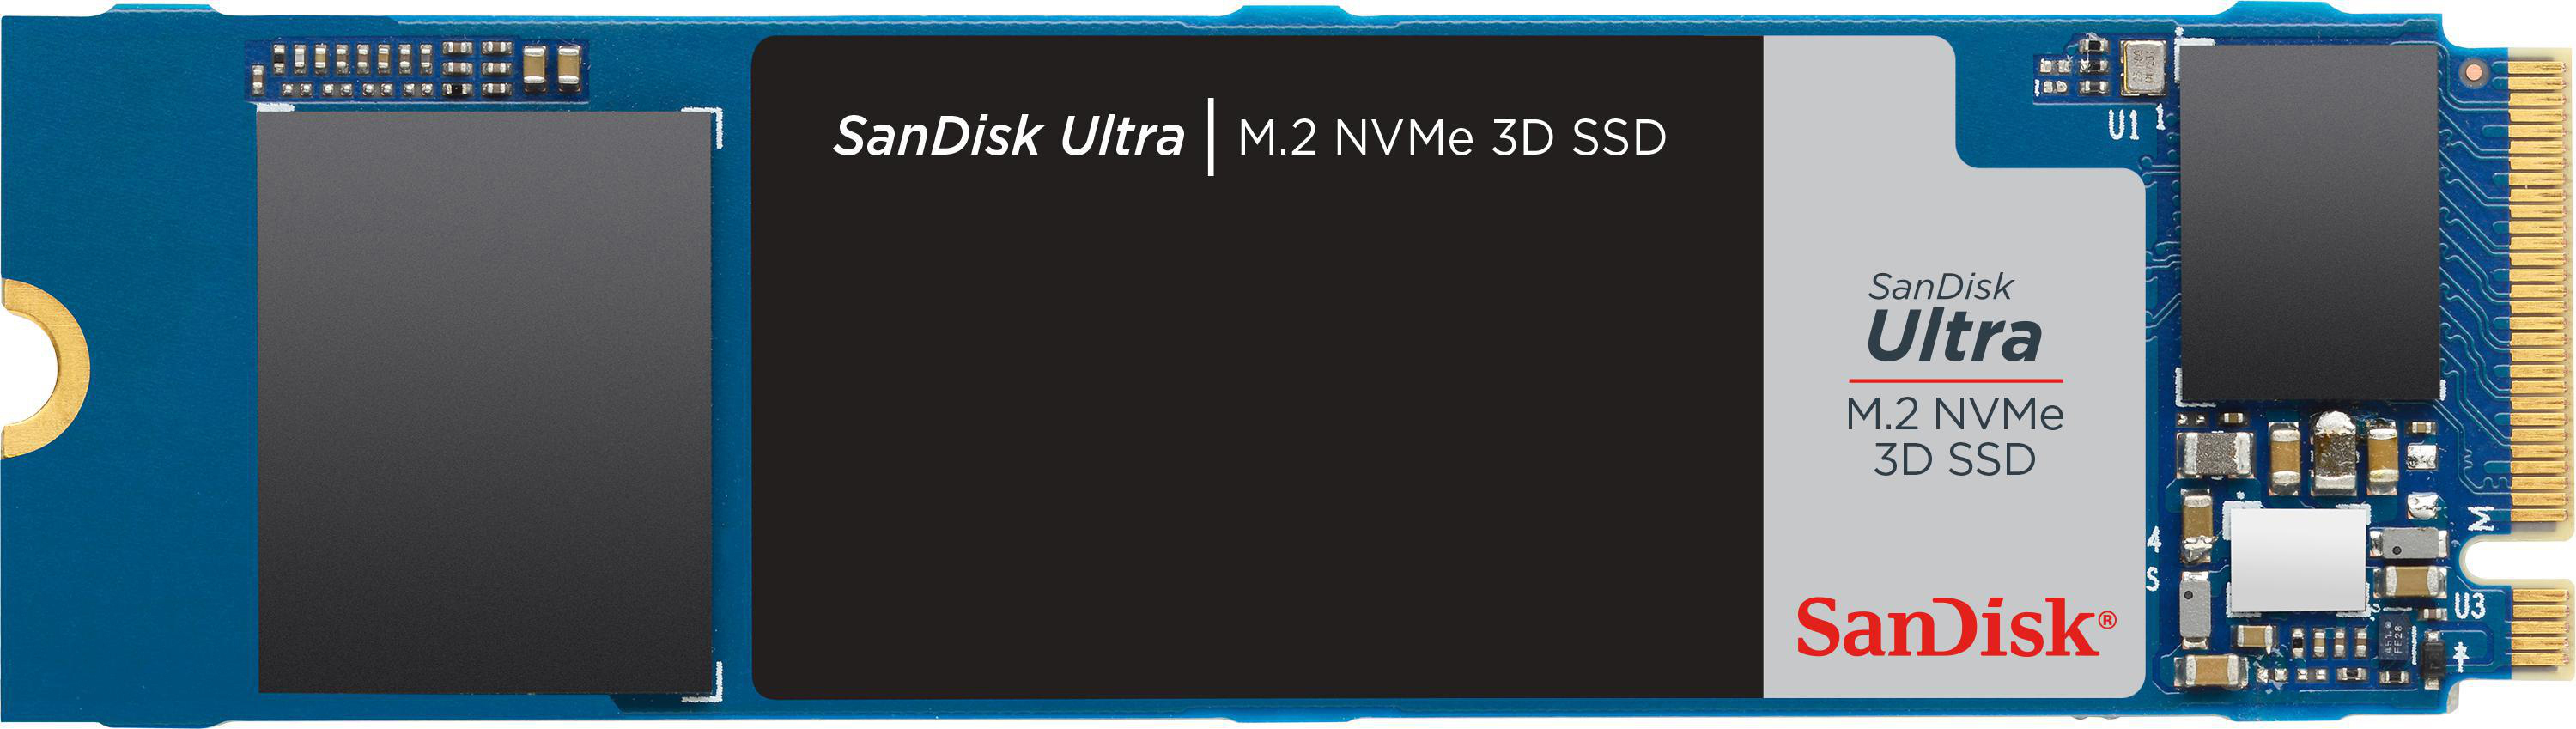 Interner GB 3D Speicher Speicher, 500 SSD via Ultra SANDISK NVMe, intern M.2